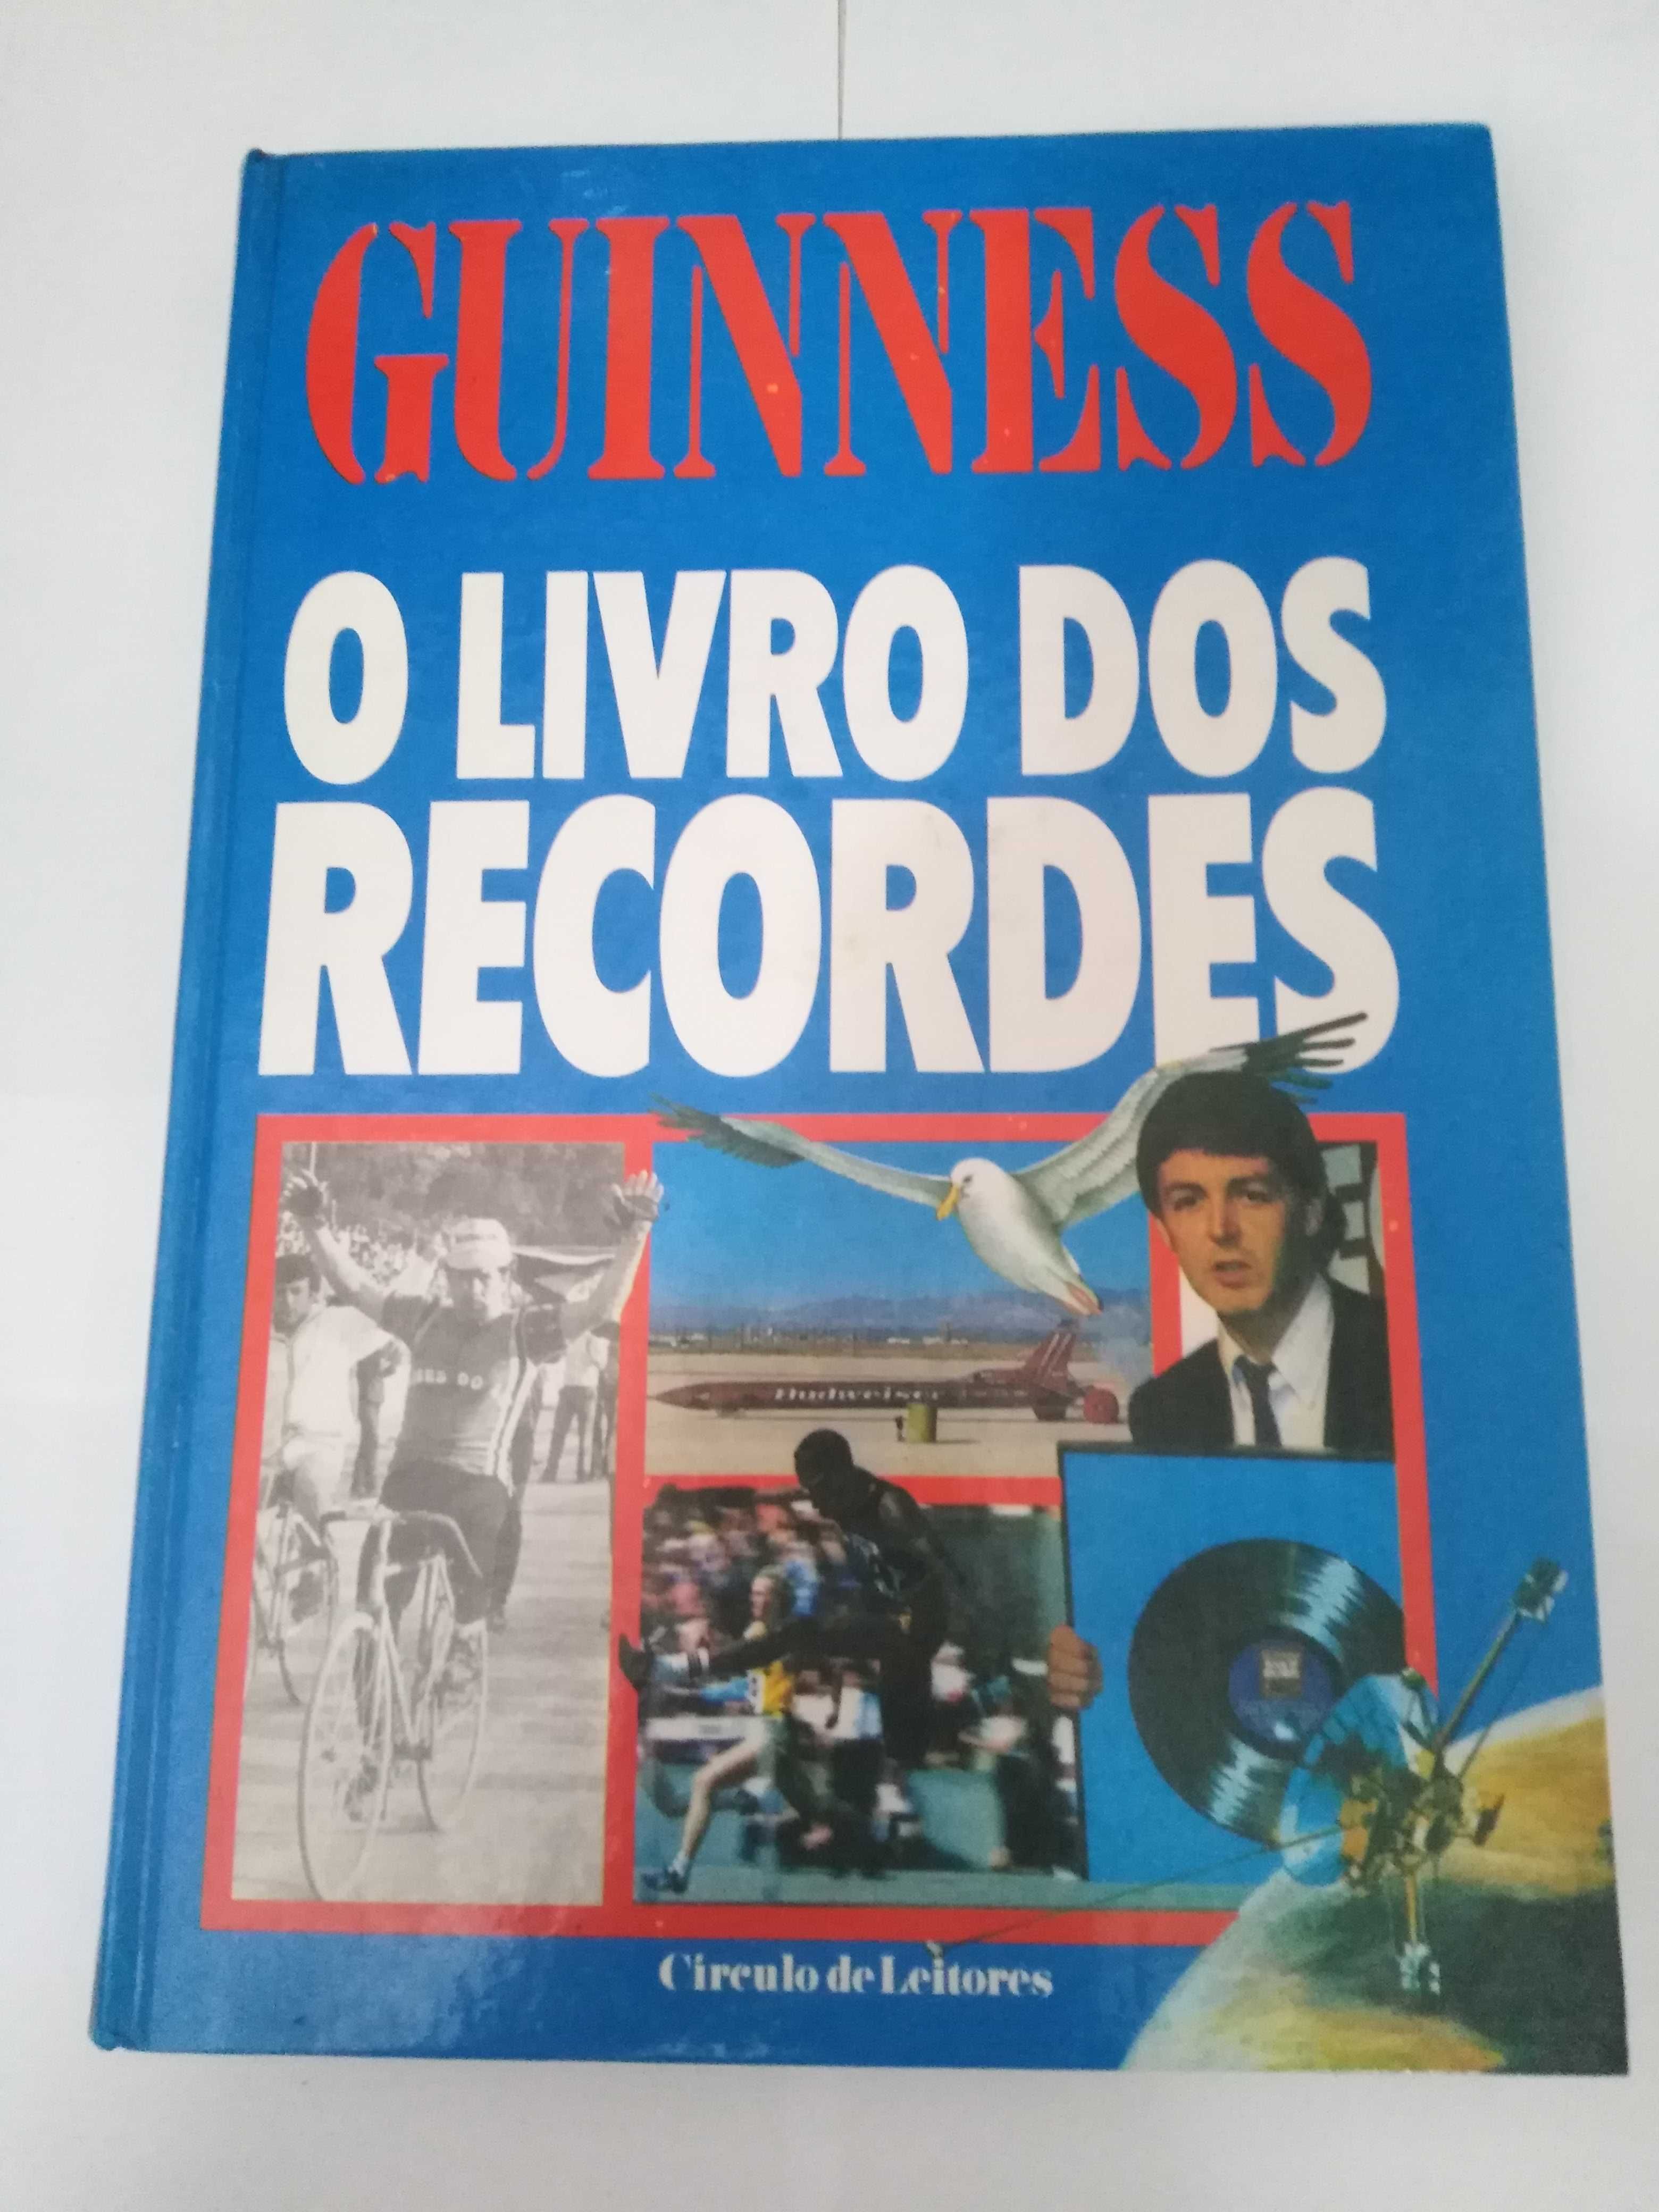 Livro dos recordes do Guiness de 1983.